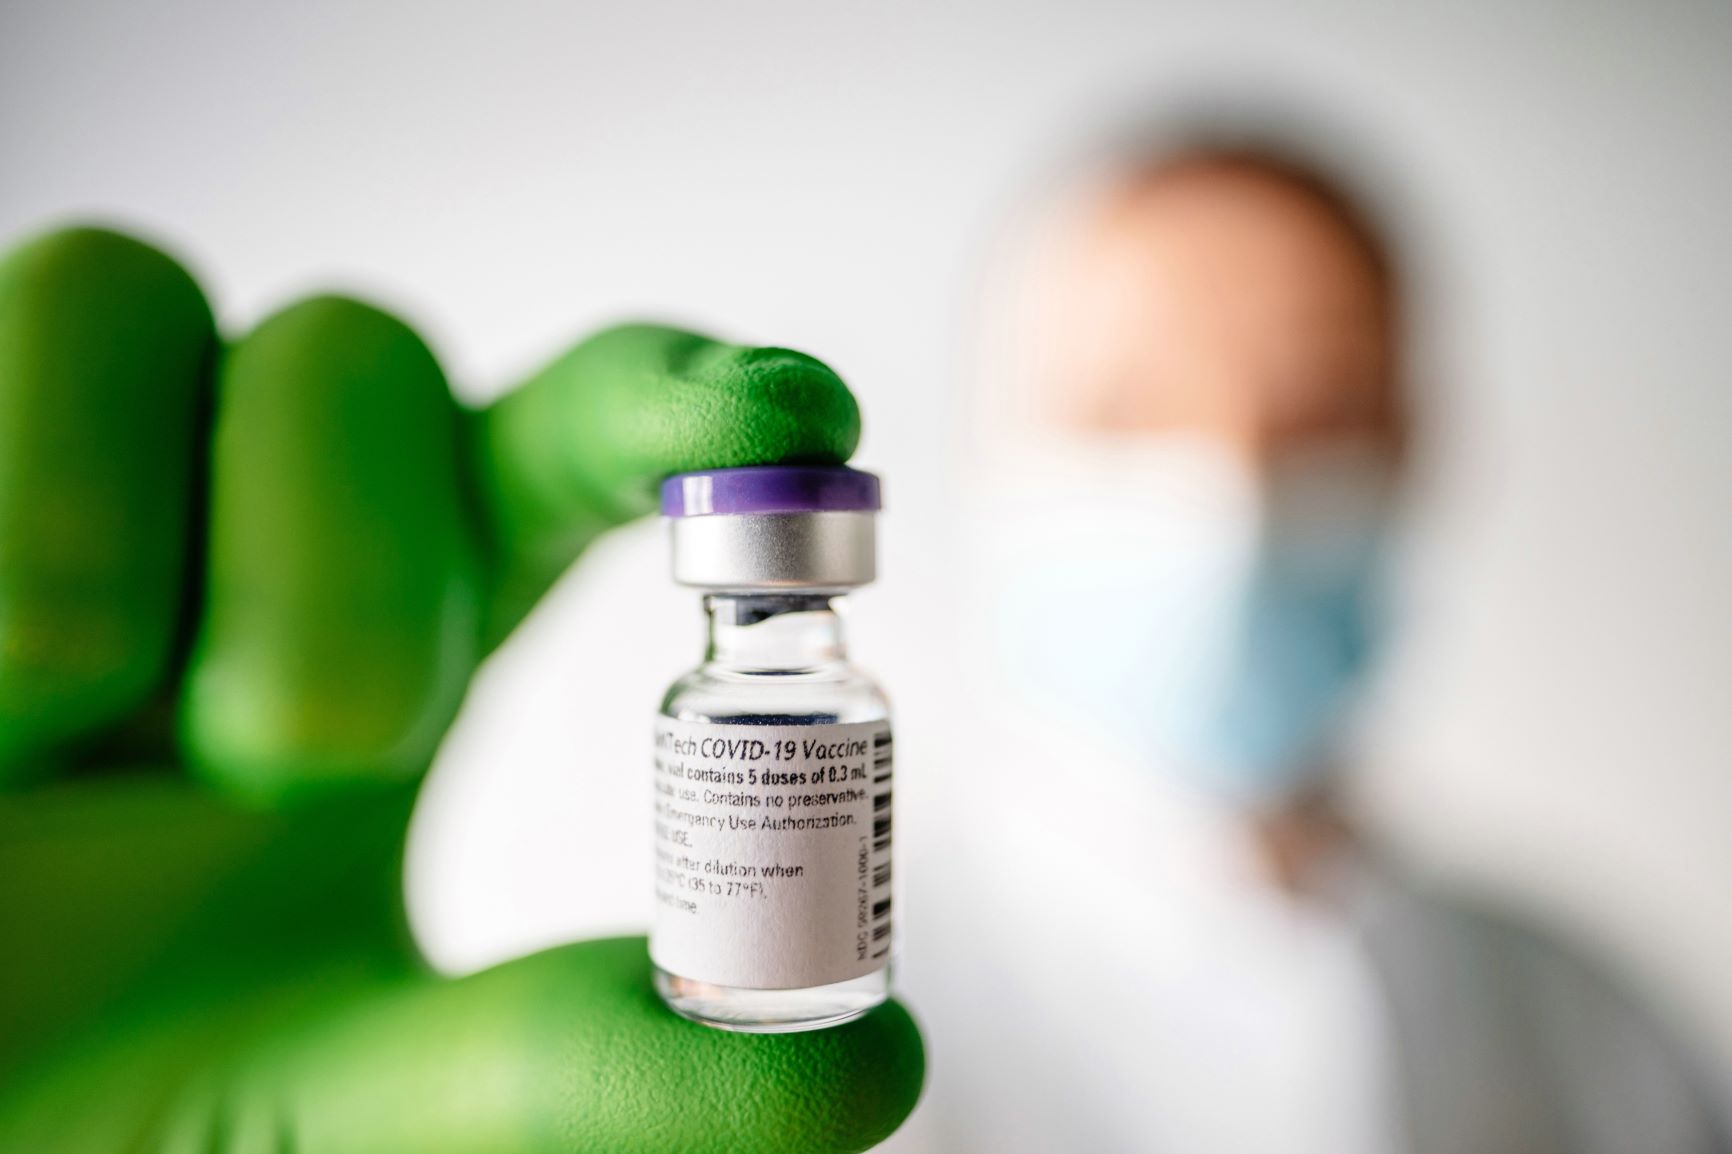 米製薬大手ファイザーと独バイオ医薬品企業ビオンテックが開発した新型コロナウイルスのワクチン【ビオンテック提供】